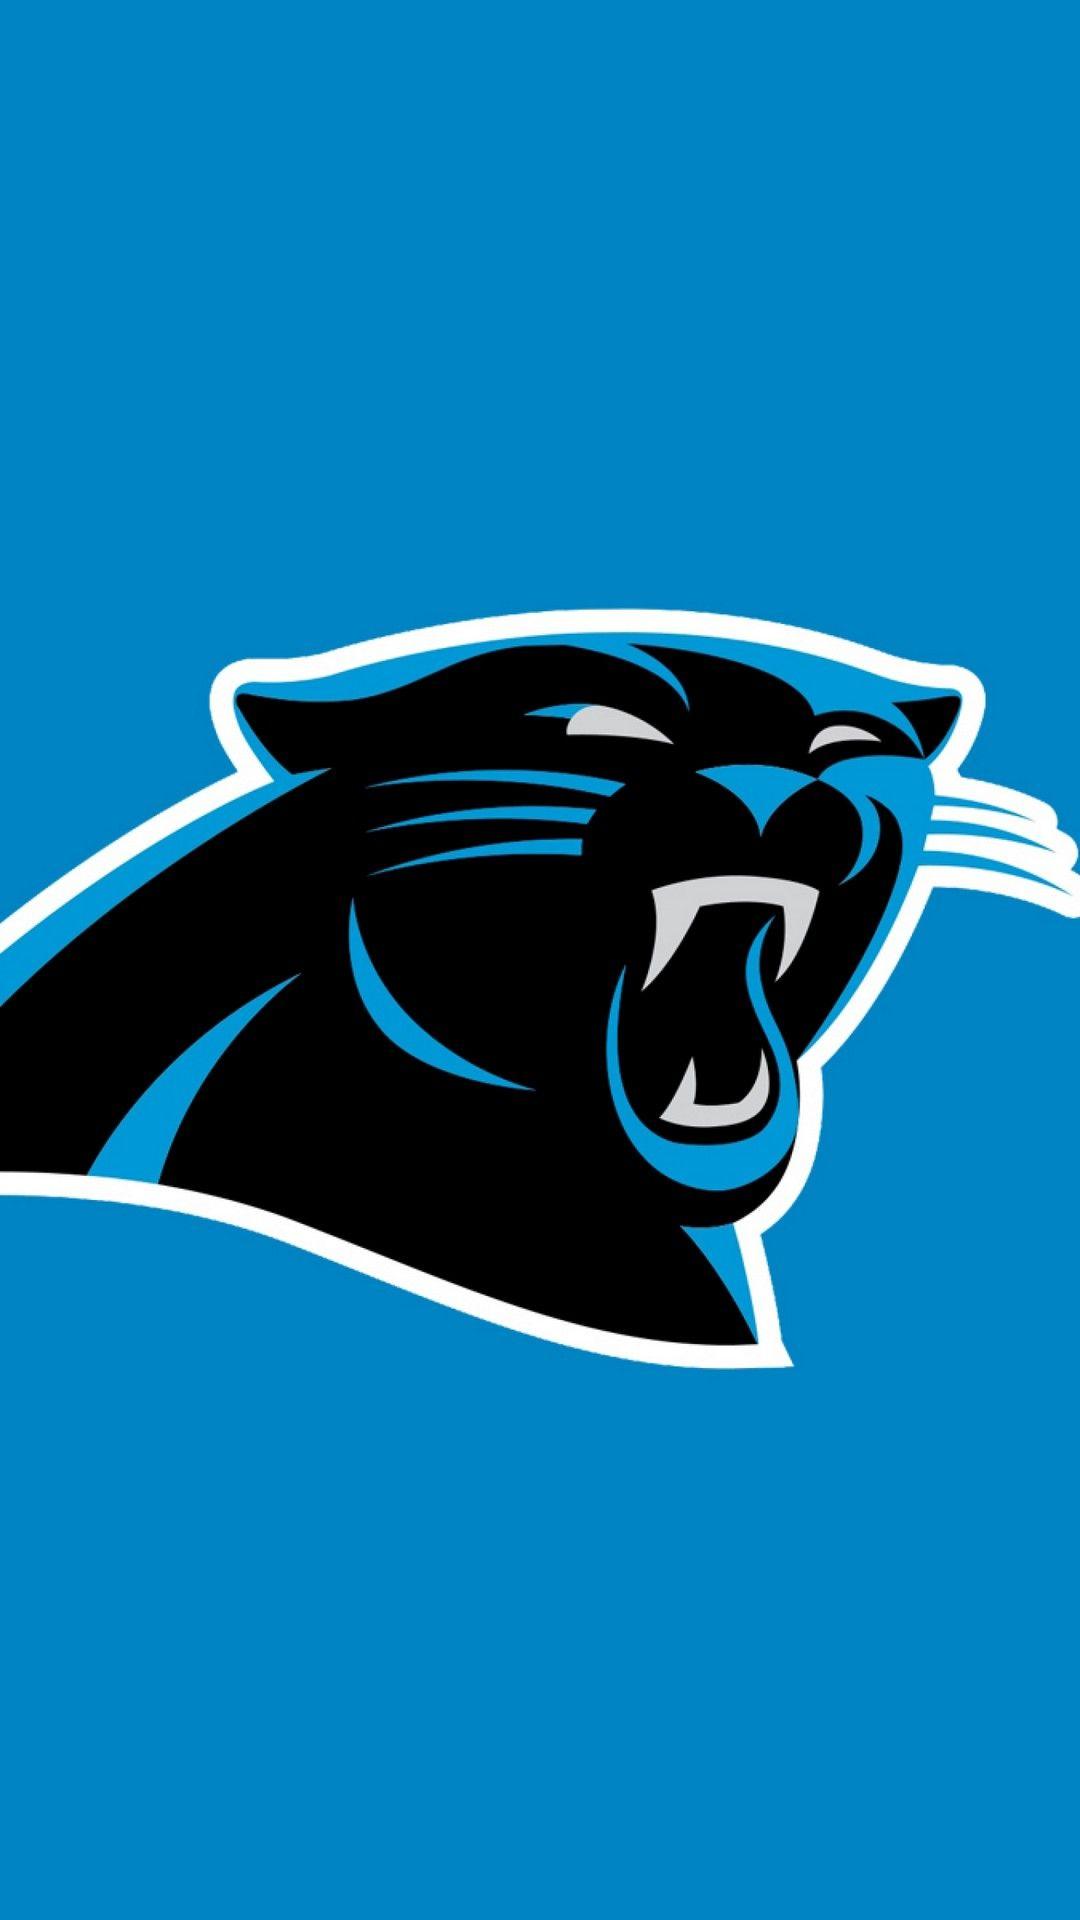 NFL Carolina Panthers - Logo 21 Wall Poster, 22.375 x 34 